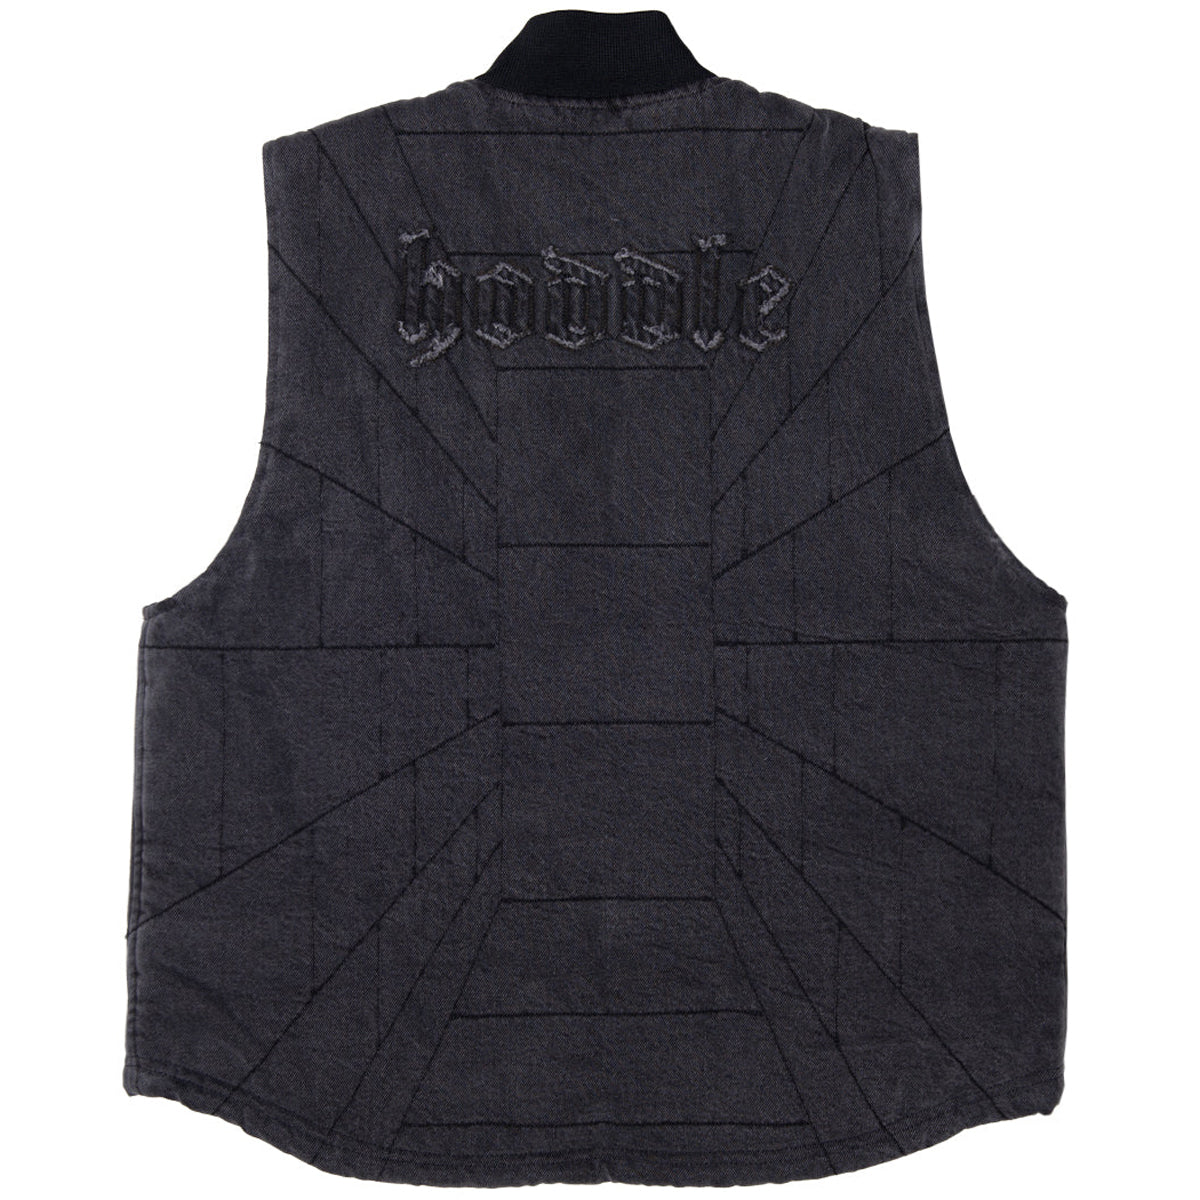 Hoddle Zip Up Carpenter Vest Jacket - Black Denim Wash image 2